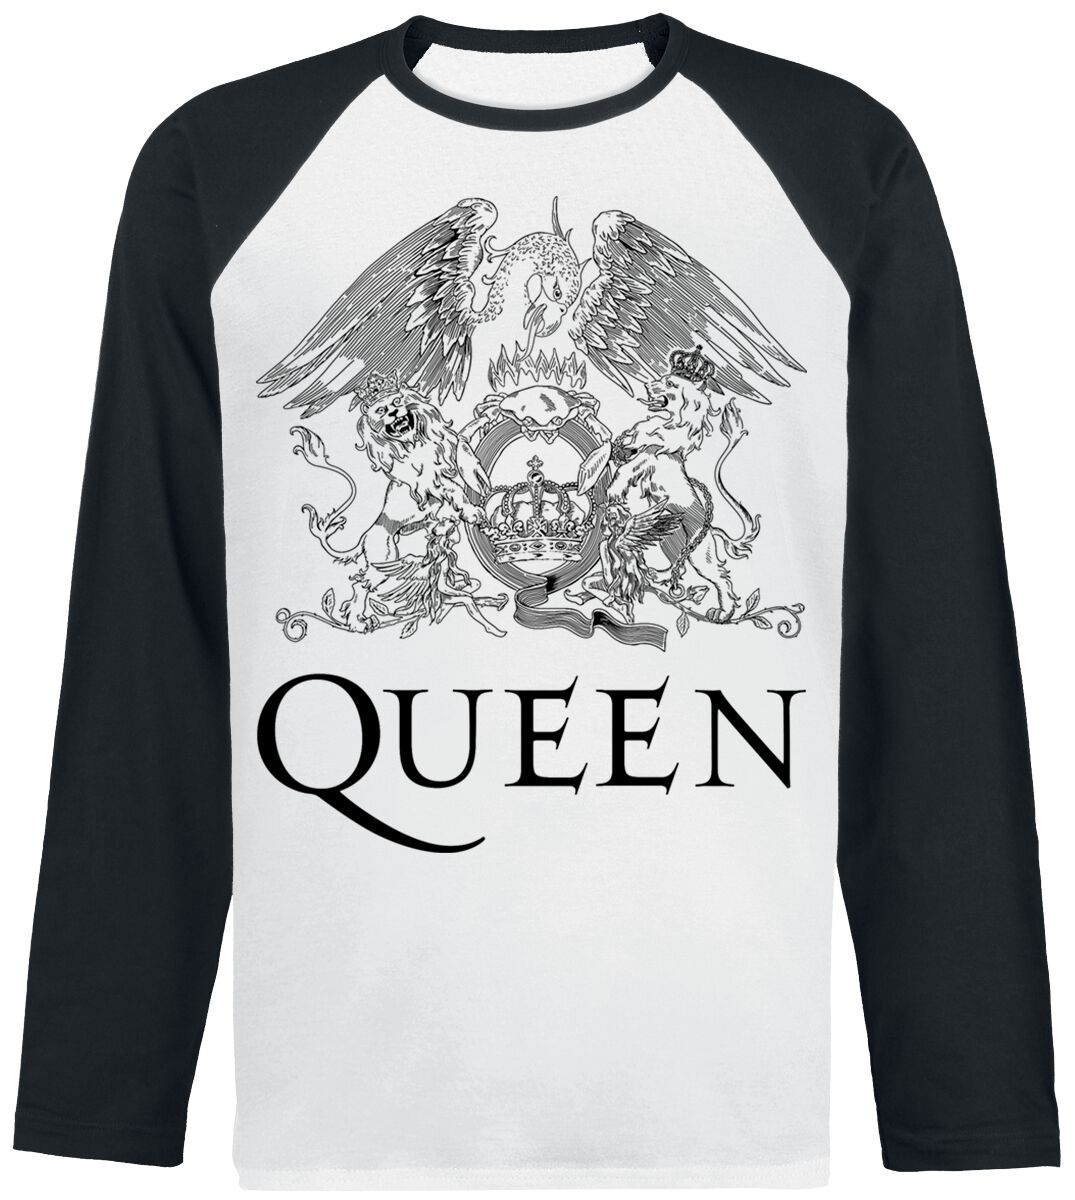 Queen Crest Vintage Langarmshirt weiß schwarz in XL